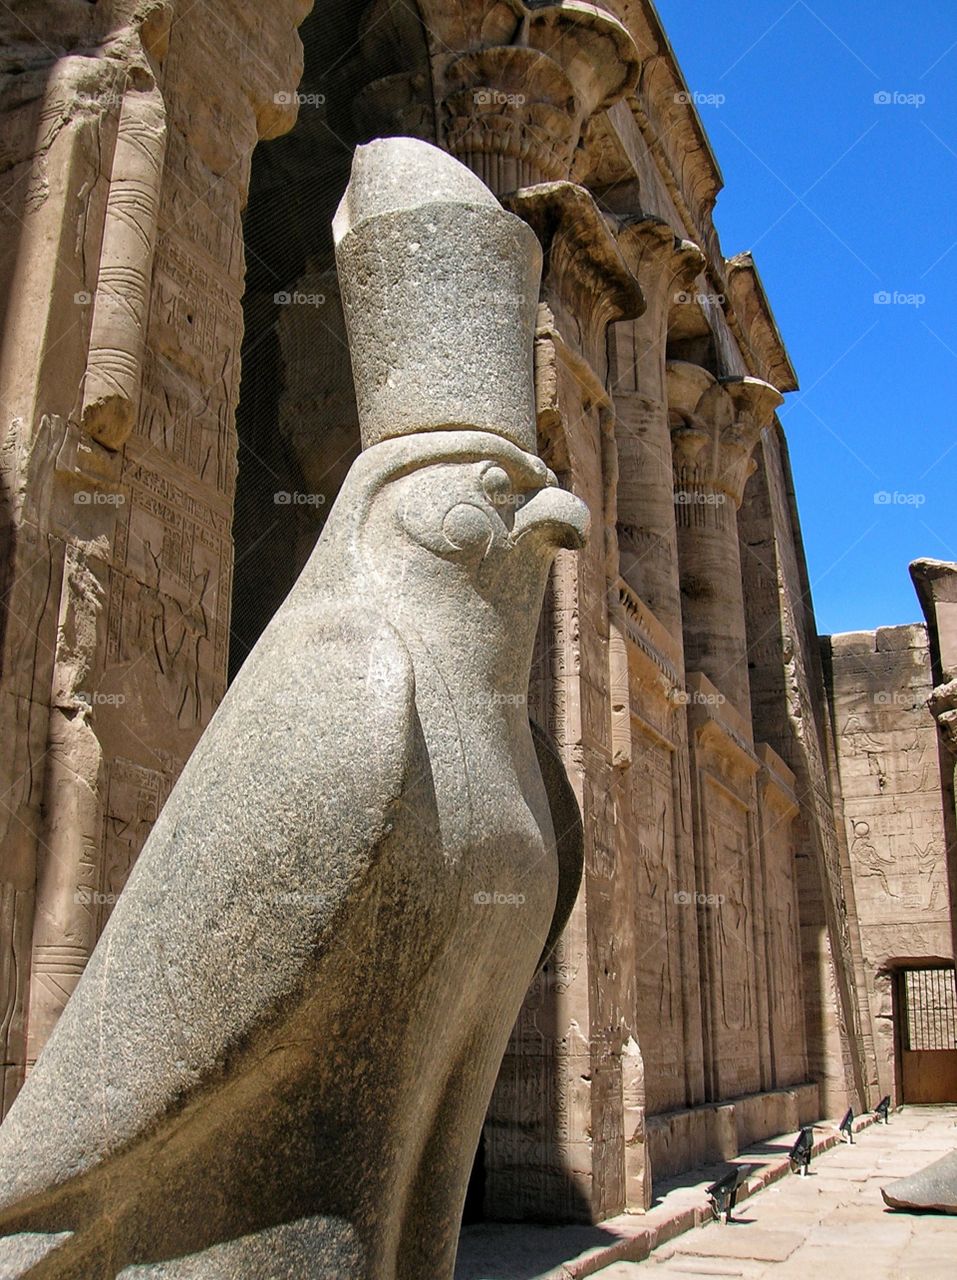 The God Horus in black granite